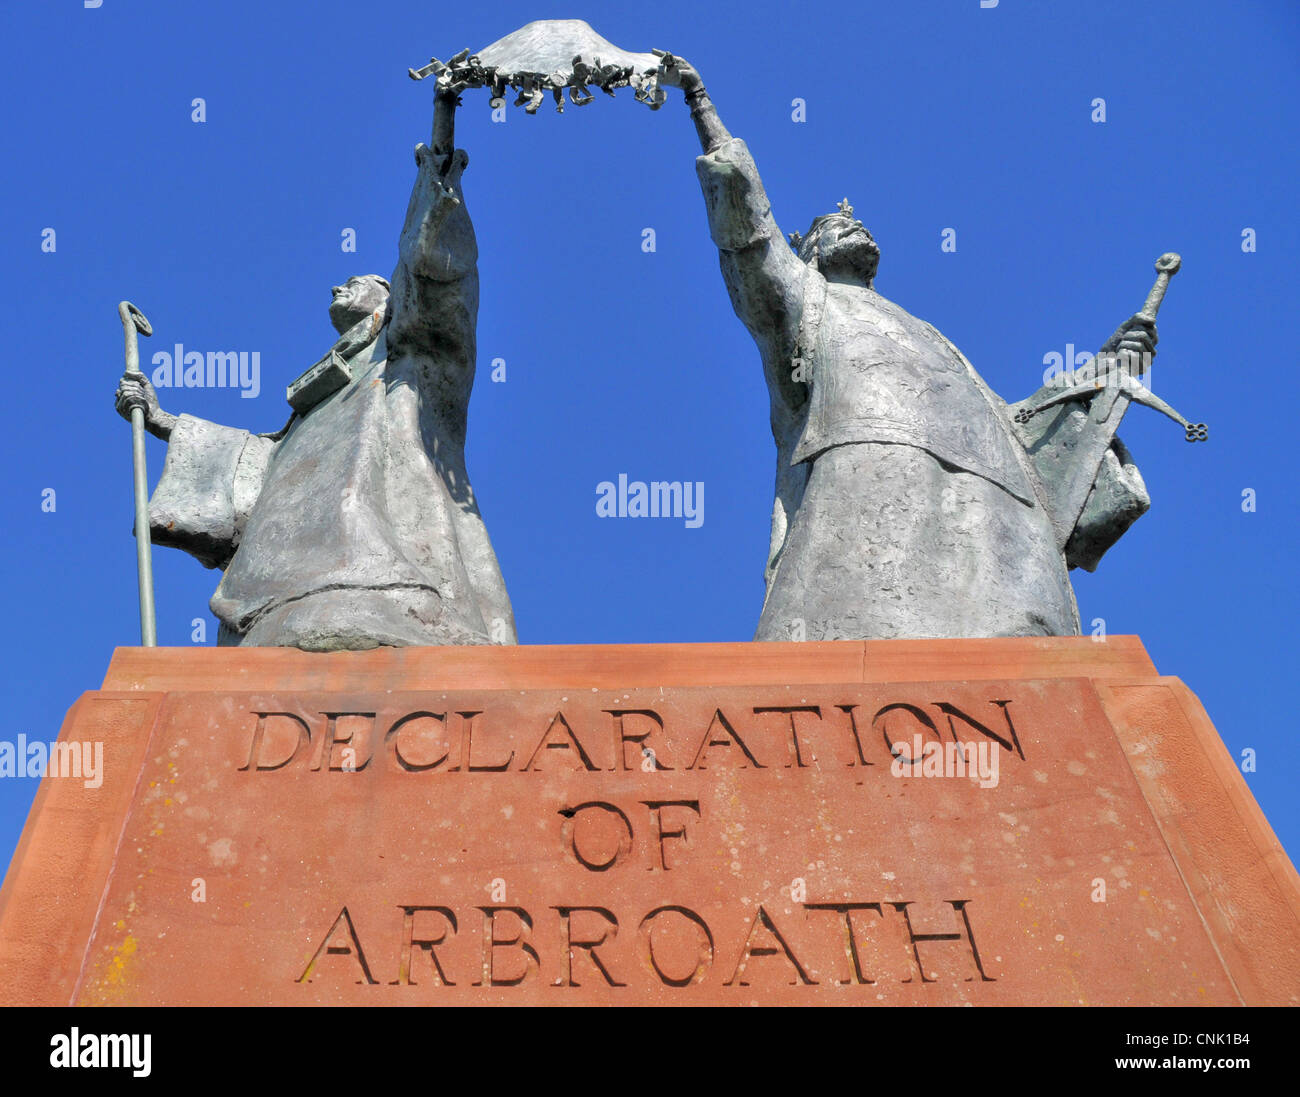 Statue commémorant la signature historique de la Déclaration d'Arbroath - et donc l'indépendance écossaise - en 1320. Banque D'Images